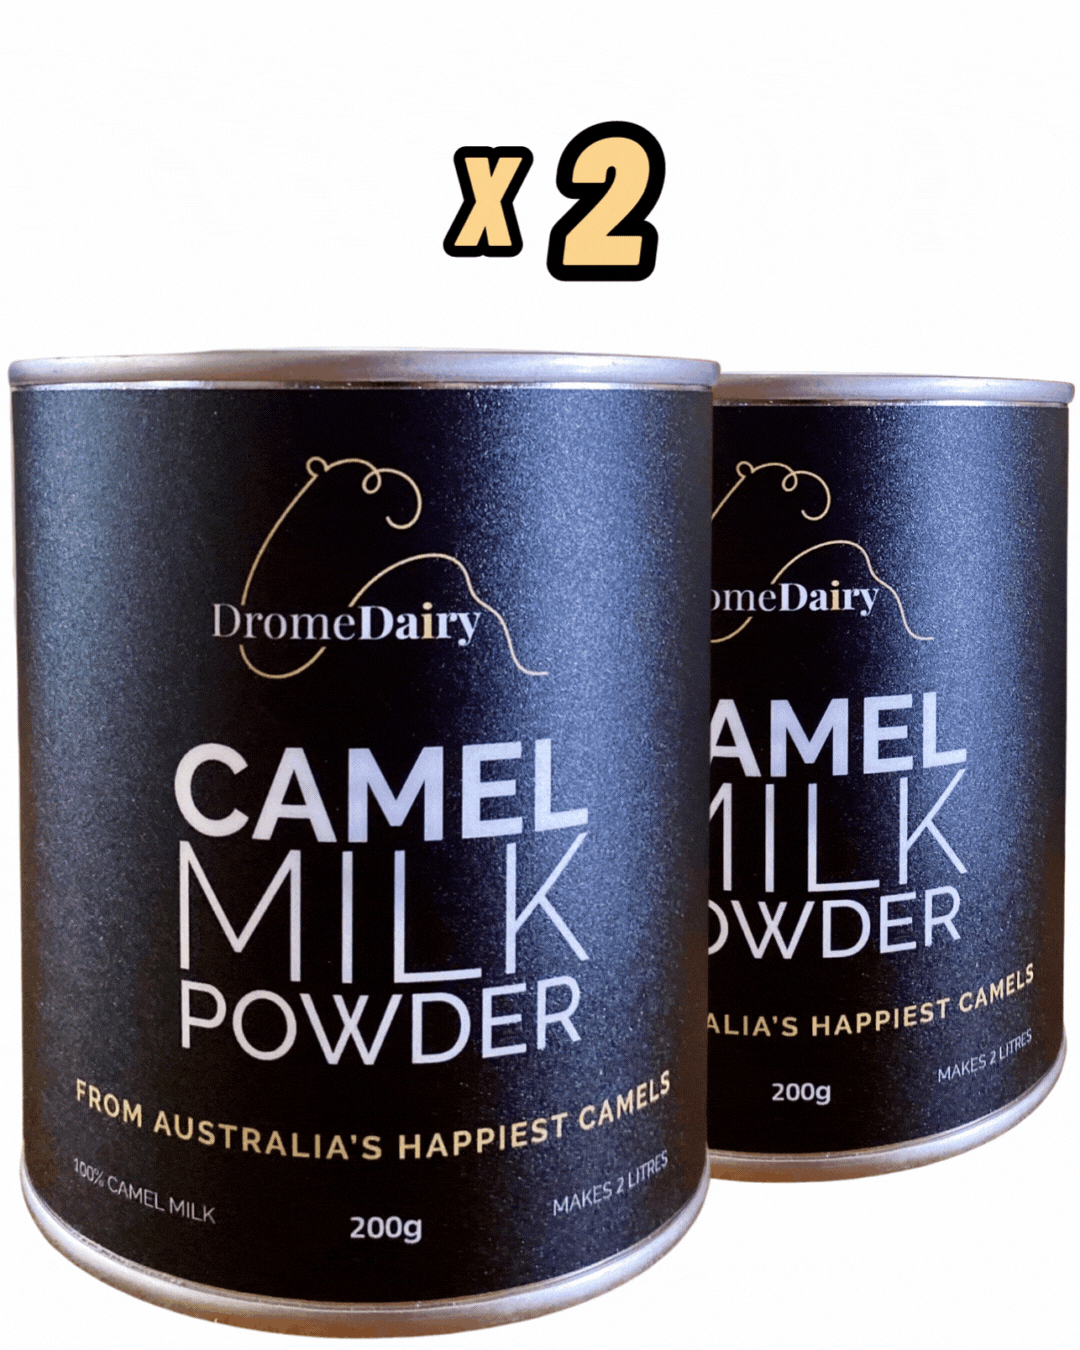 2x Camel Milk Powder Bundle – DromeDairy Body + Skin